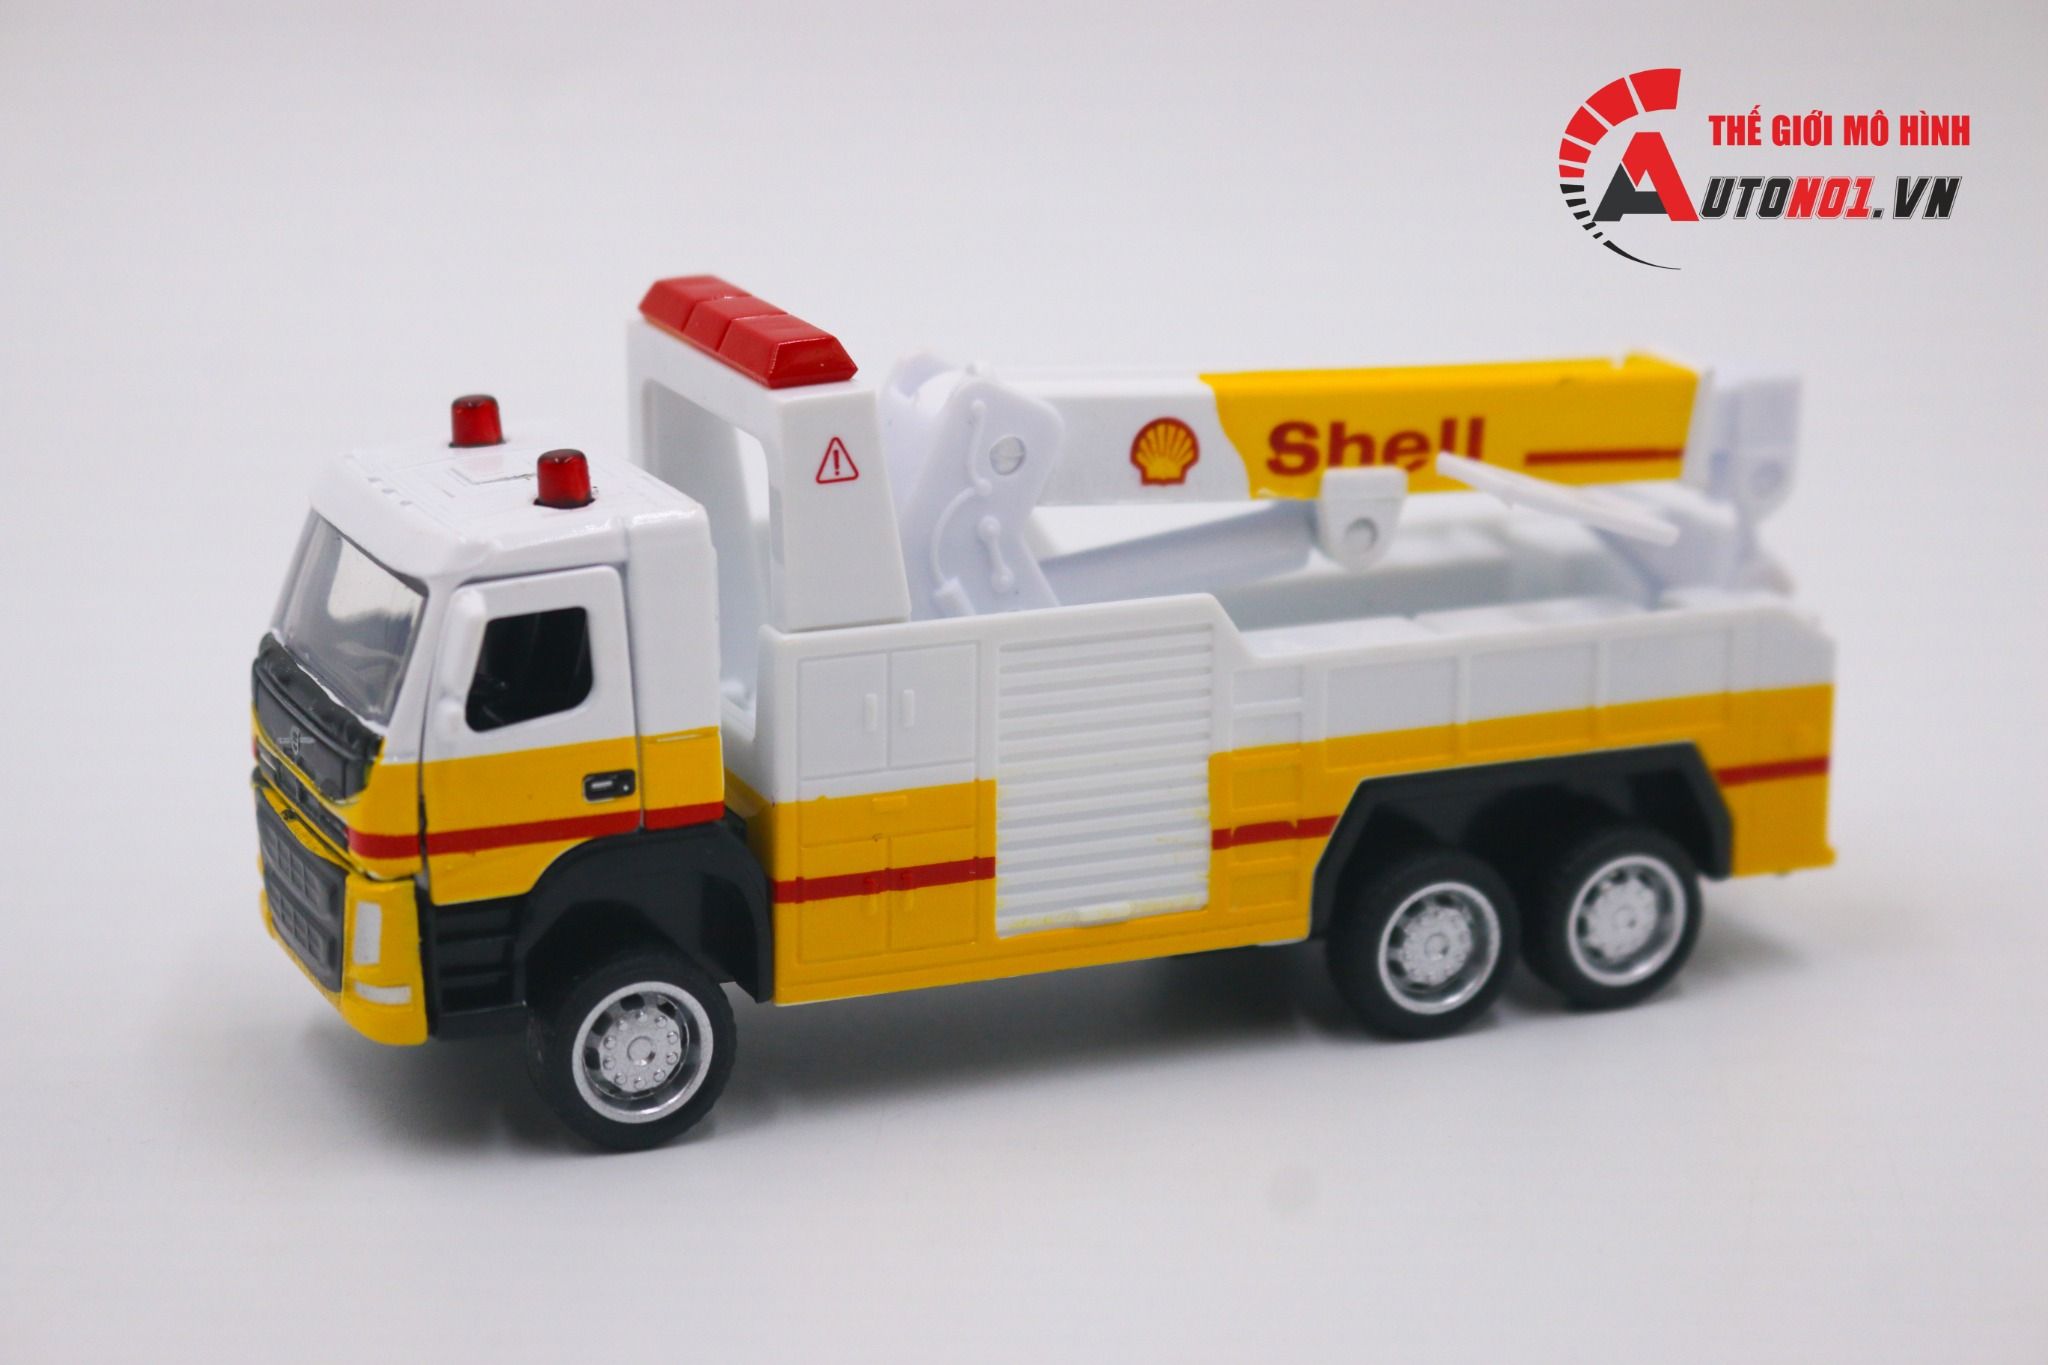  Mô hình xe cẩu cứu hộ Shell Volvo tỉ lệ 1:72 CCA 8188 